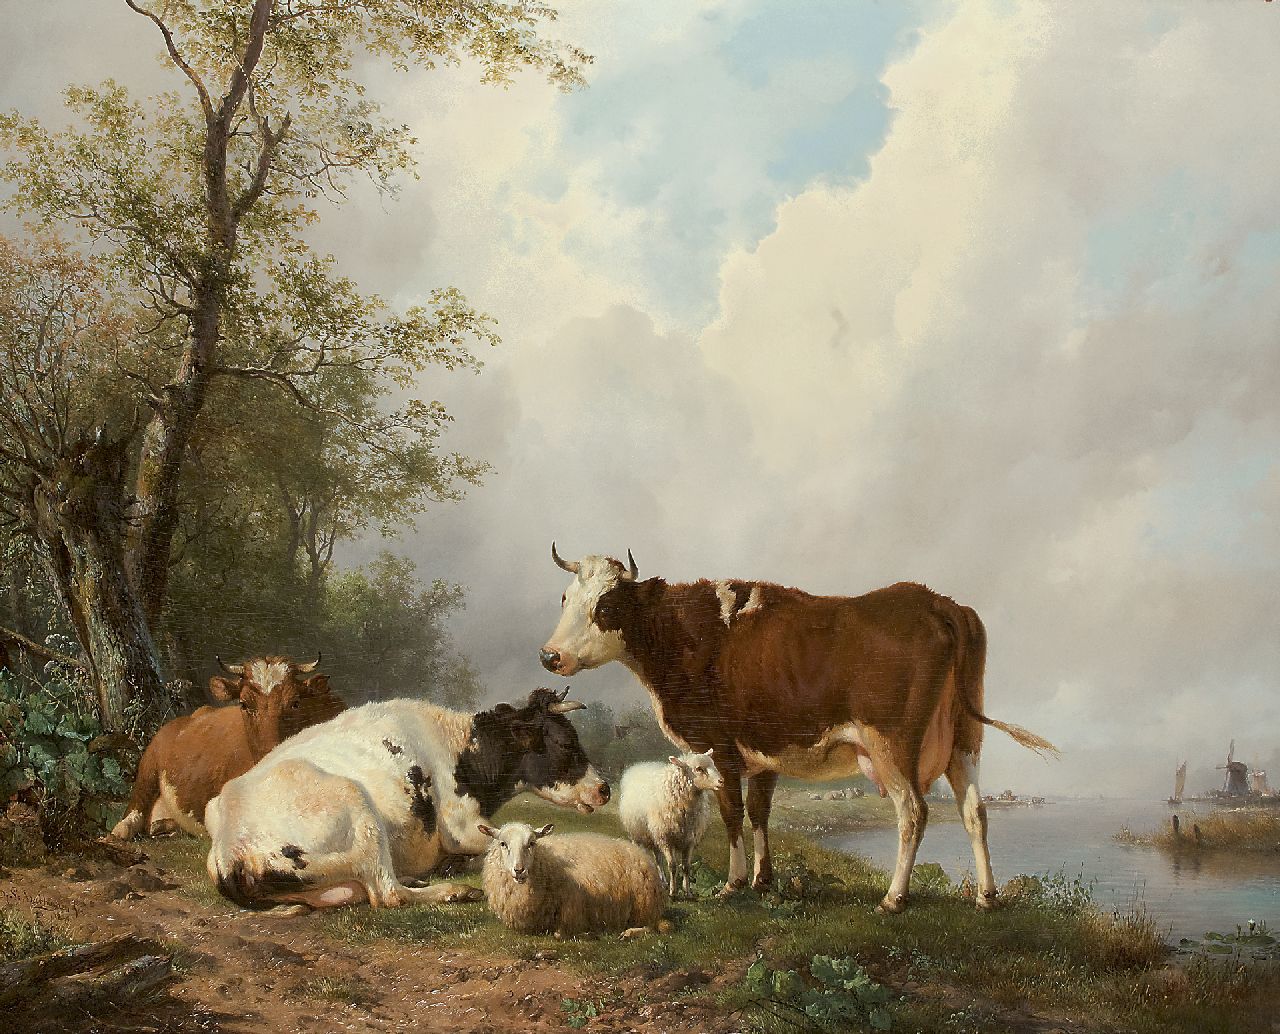 Sande Bakhuyzen H. van de | Hendrikus van de Sande Bakhuyzen, Cows in a river landscape, oil on panel 79.9 x 102.4 cm, signed l.l. and painted 1840